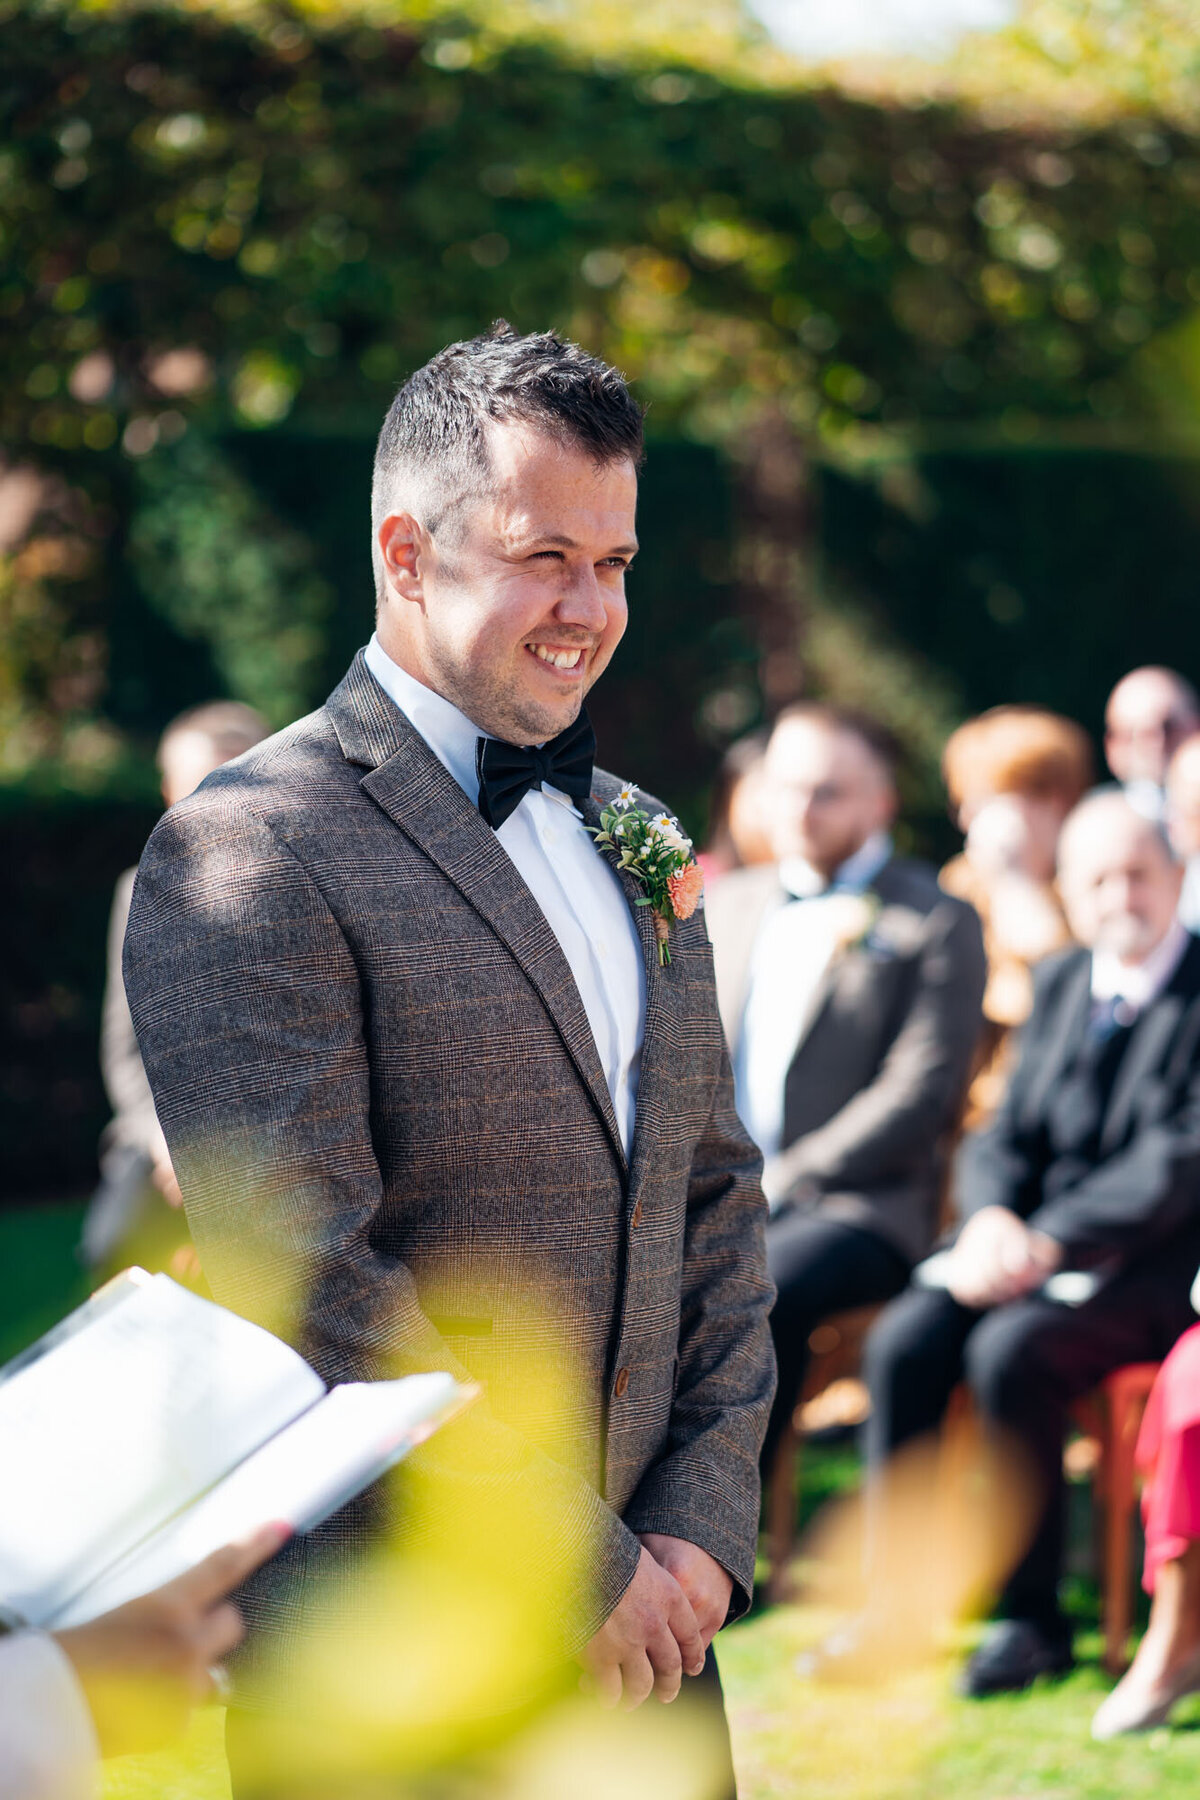 Pauntley-court-wedding-photographer-groom-during-outdoor-ceremony